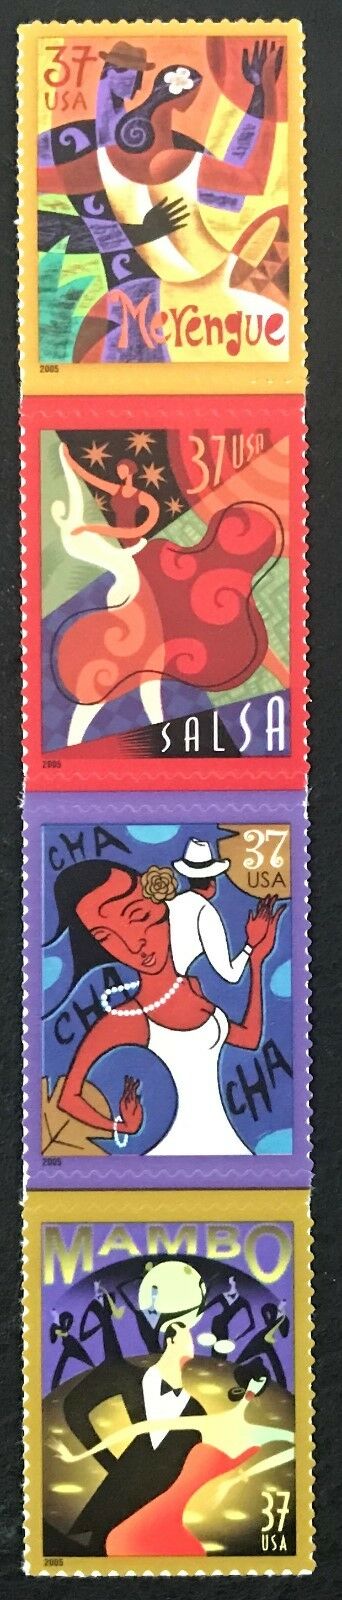 2005 Let's Dance Bailemos Strip of 4 37c Postage Stamps - MNH, OG - Sc# 3939-3942